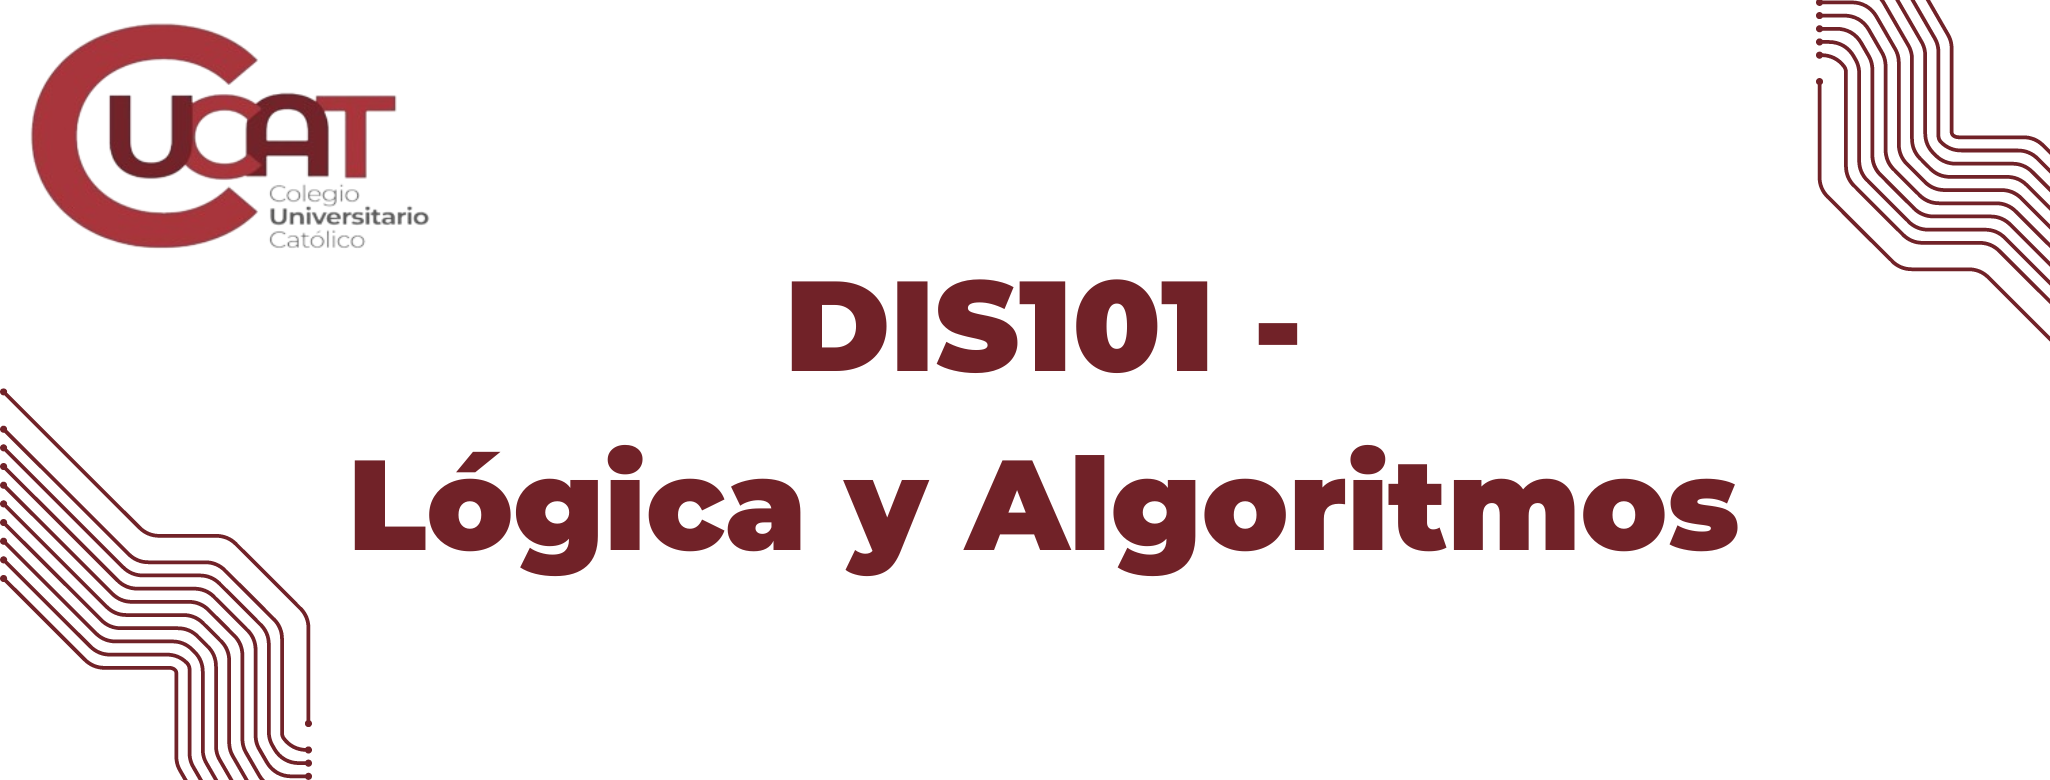 DIS101-Lógica y Algoritmos